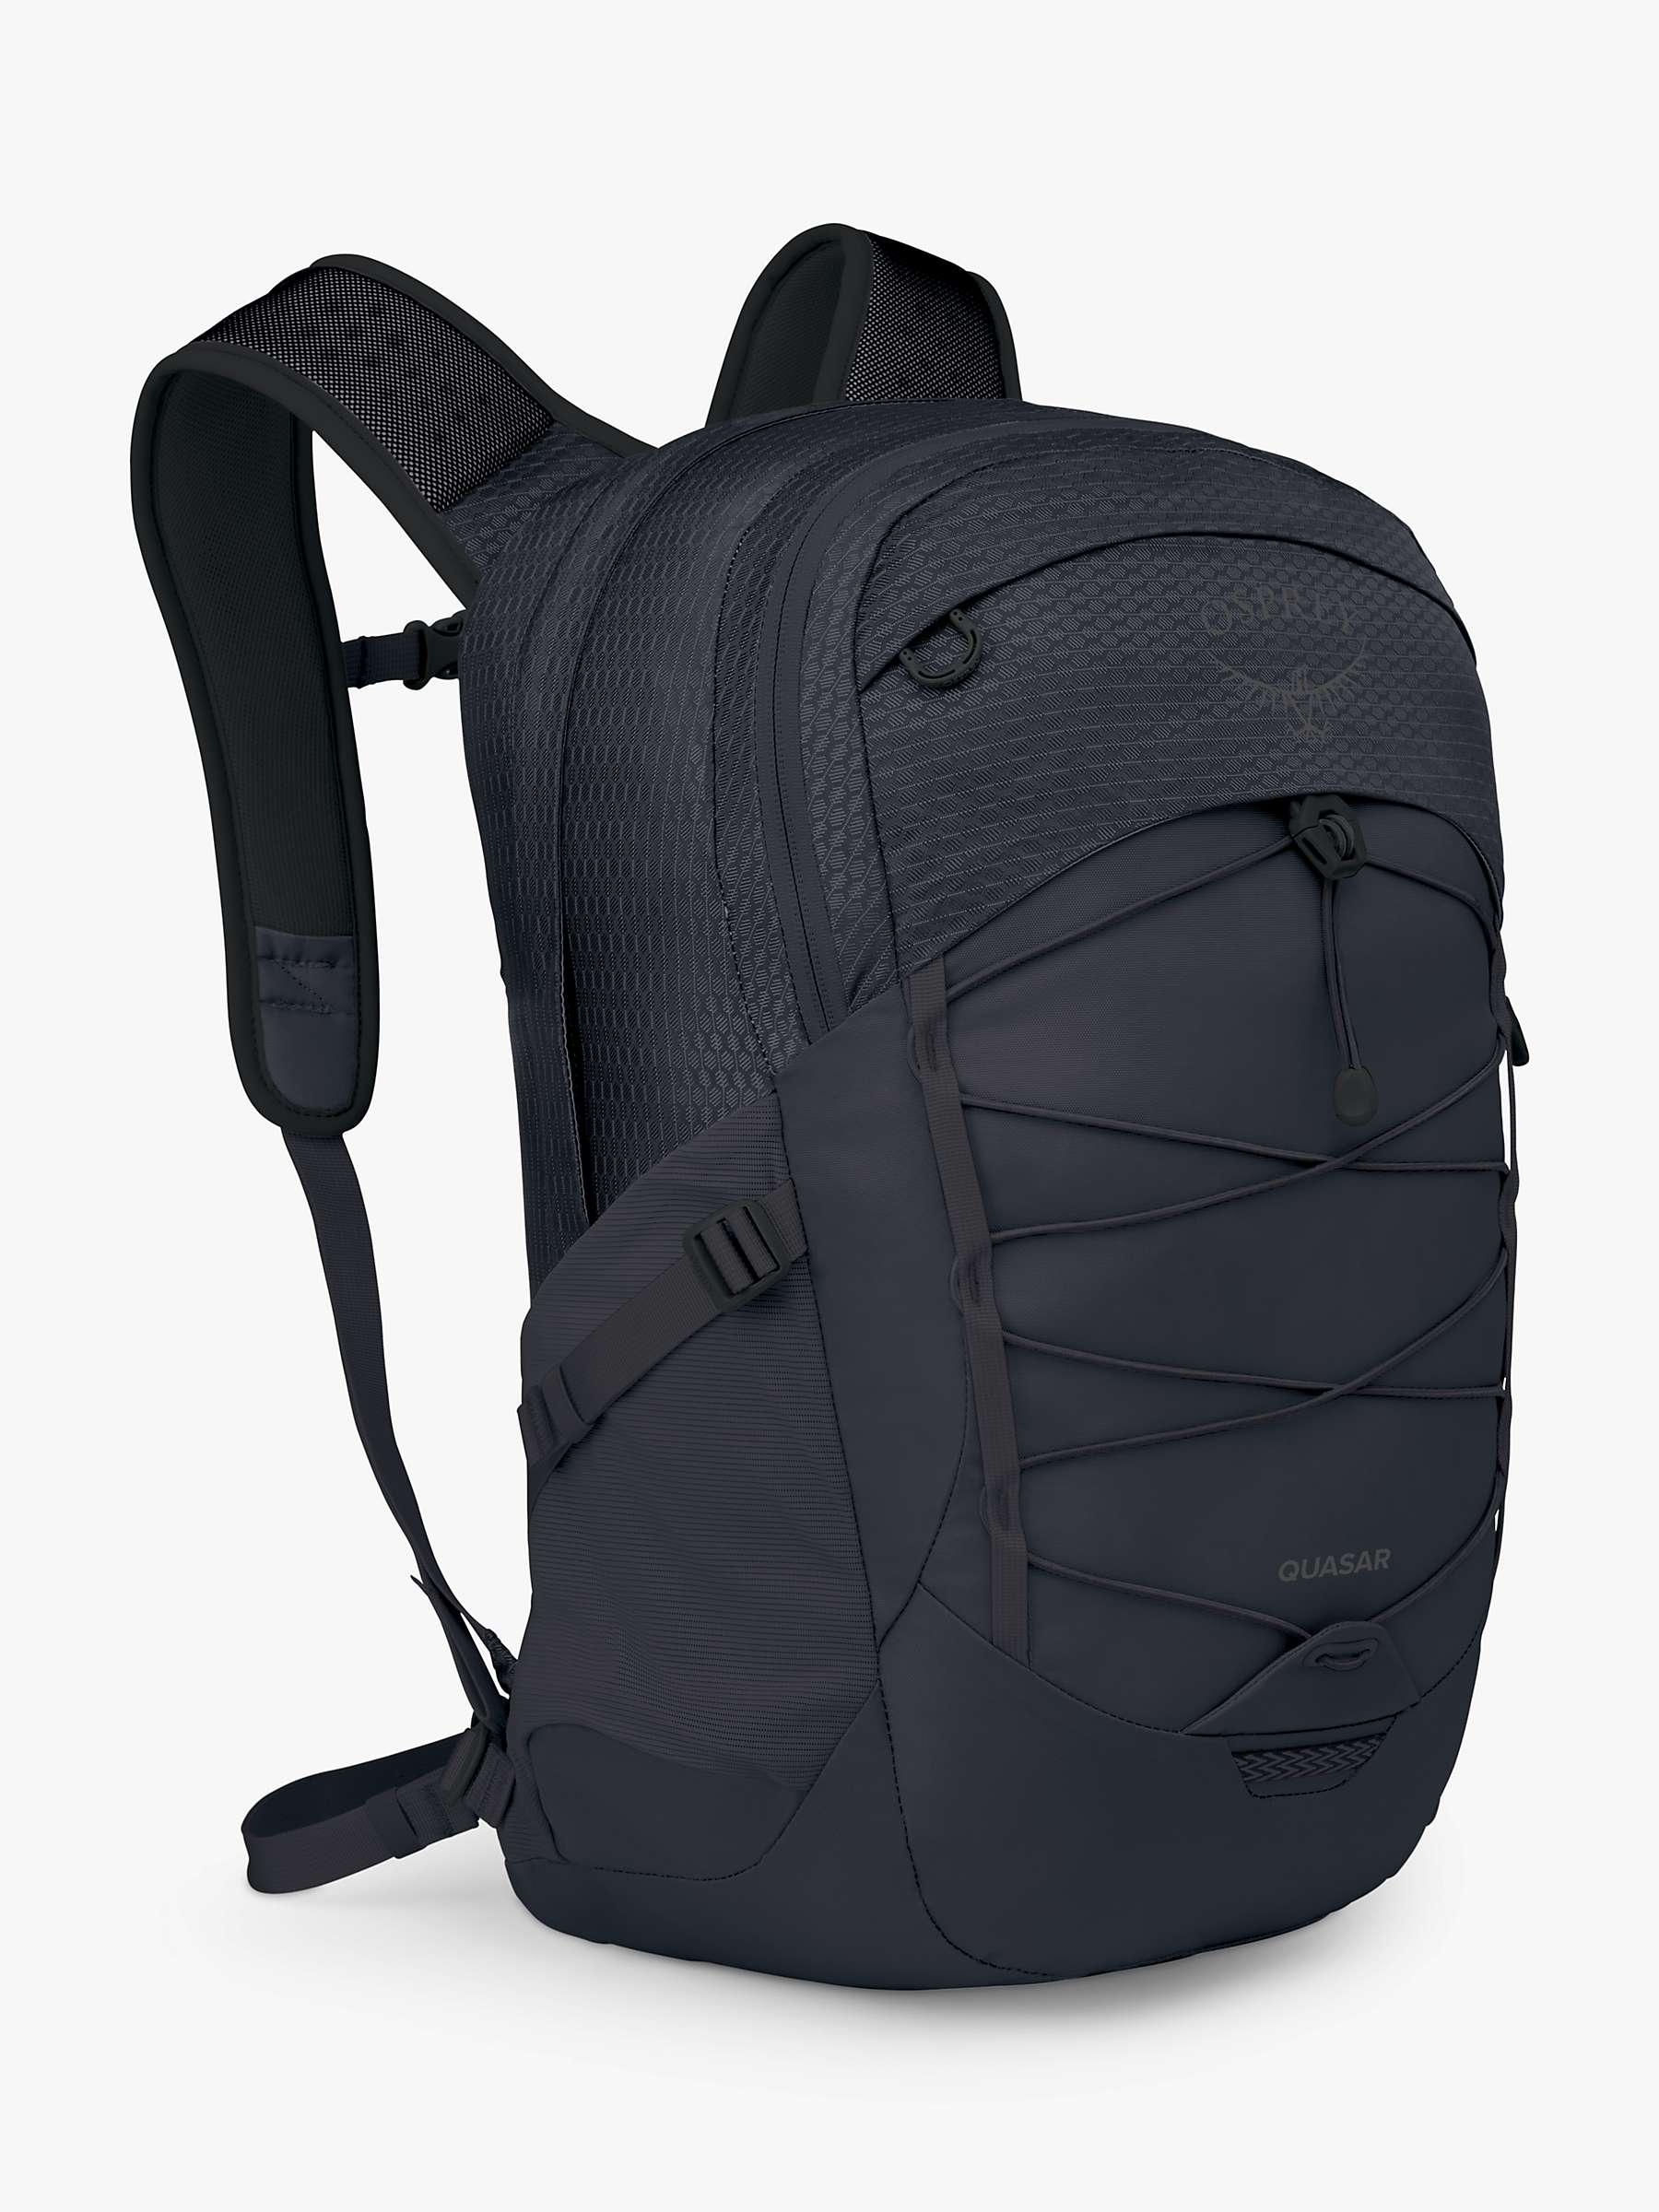 Buy Osprey Quasar 26 Backpack Online at johnlewis.com